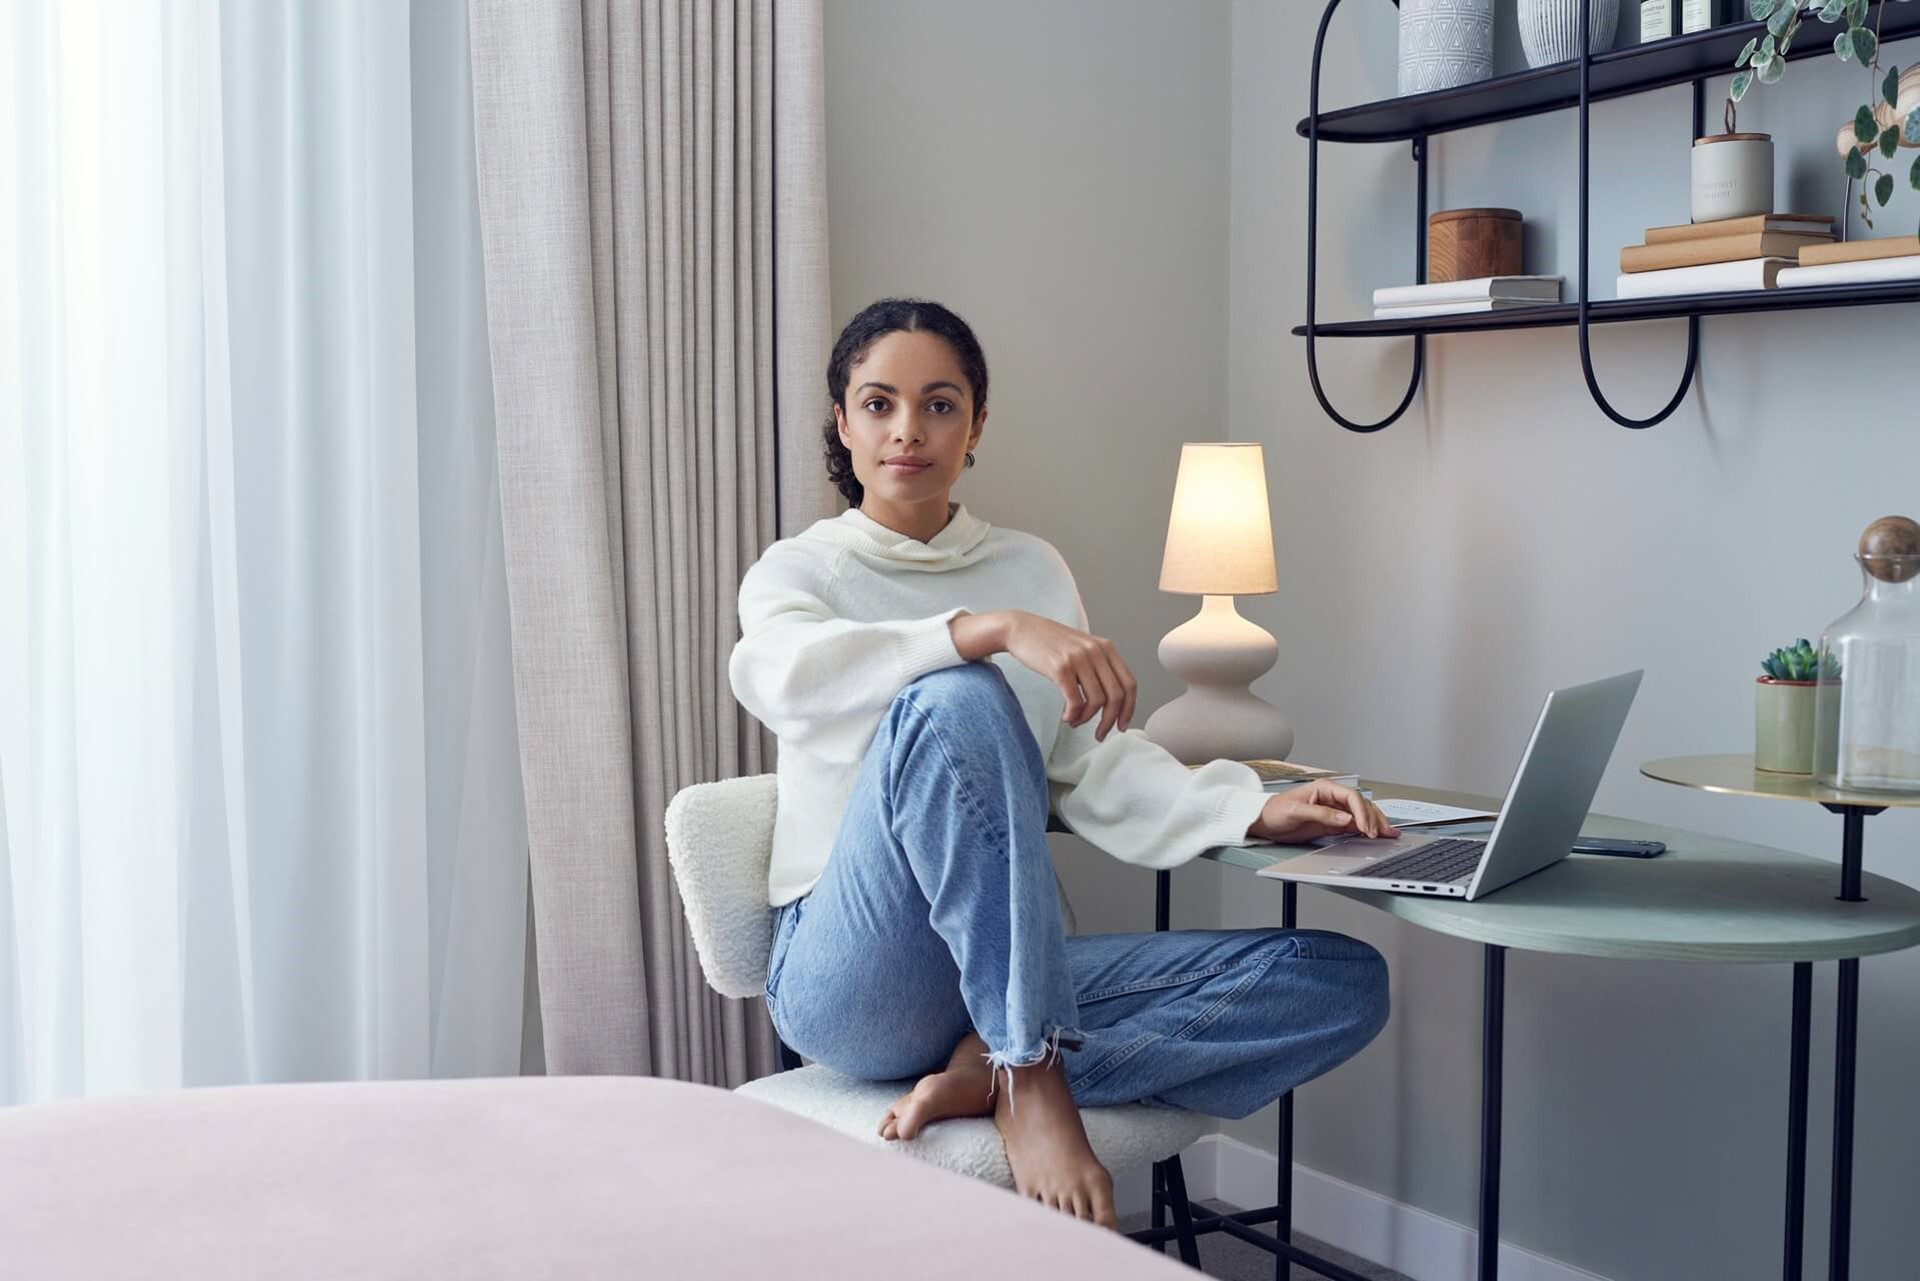 Vrouw zit met haar laptop aan een bureautje in de slaapkamer | Informatie van Vattenfall over energiekosten